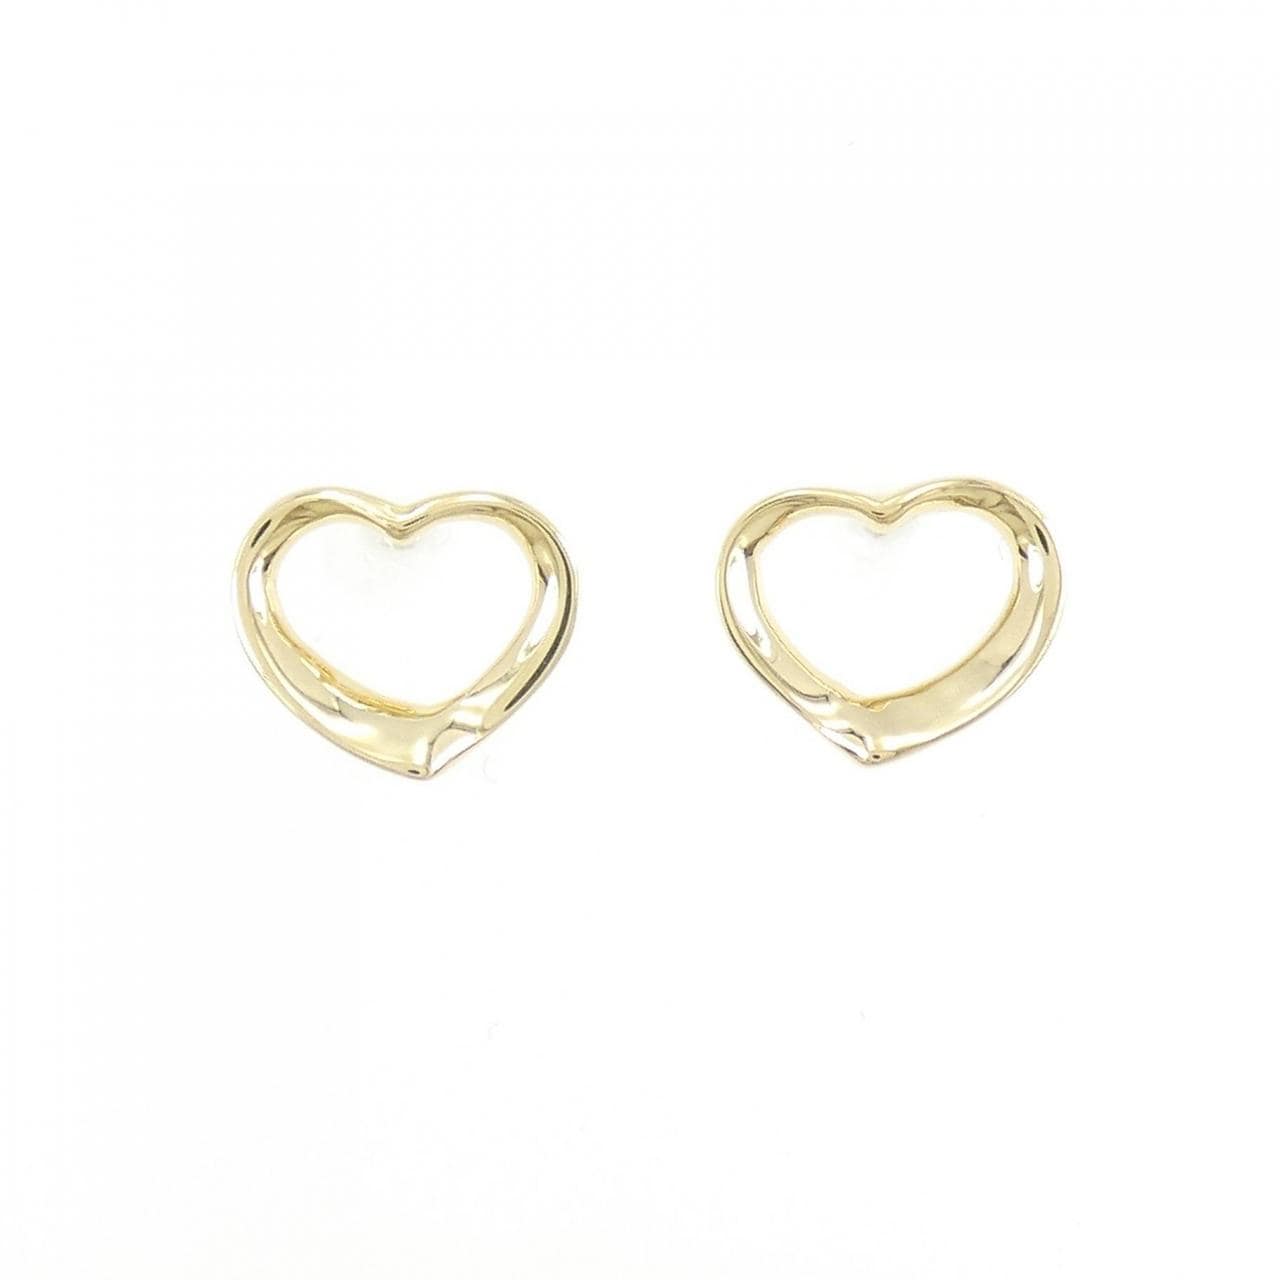 TIFFANY open heart mini earrings